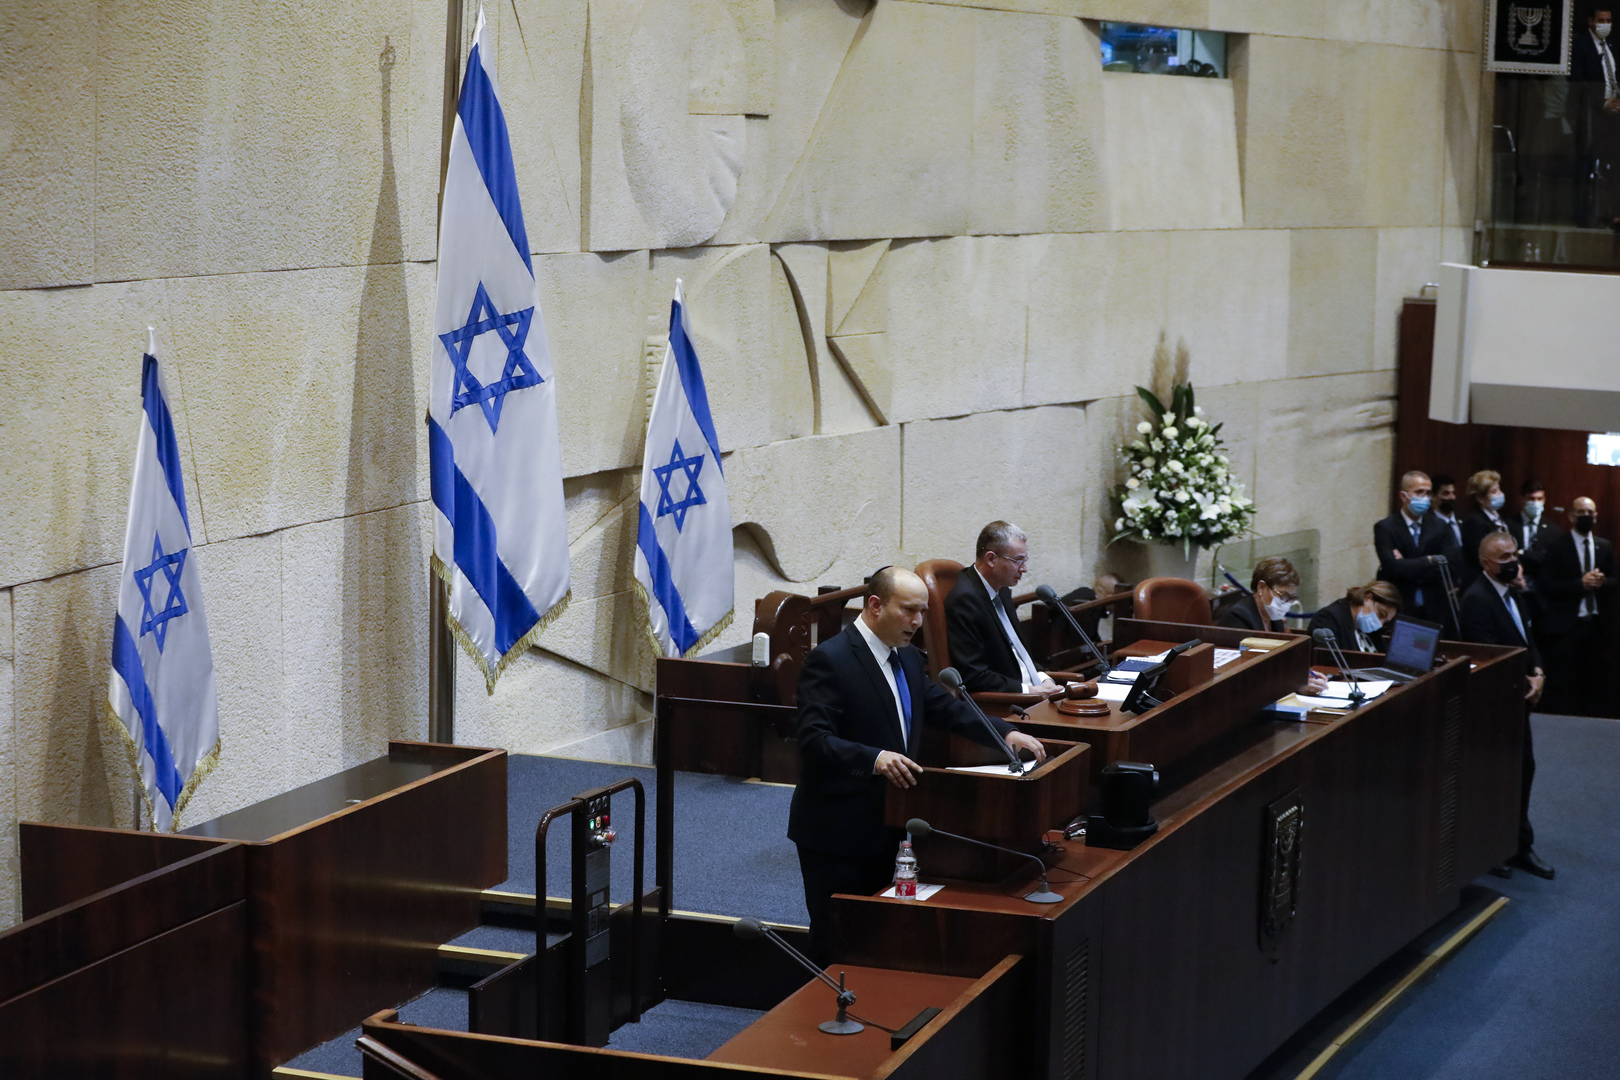 الكنيست الإسرائيلي يصوت على حل نفسه في القراءة الأولى بأغلبية ساحقة